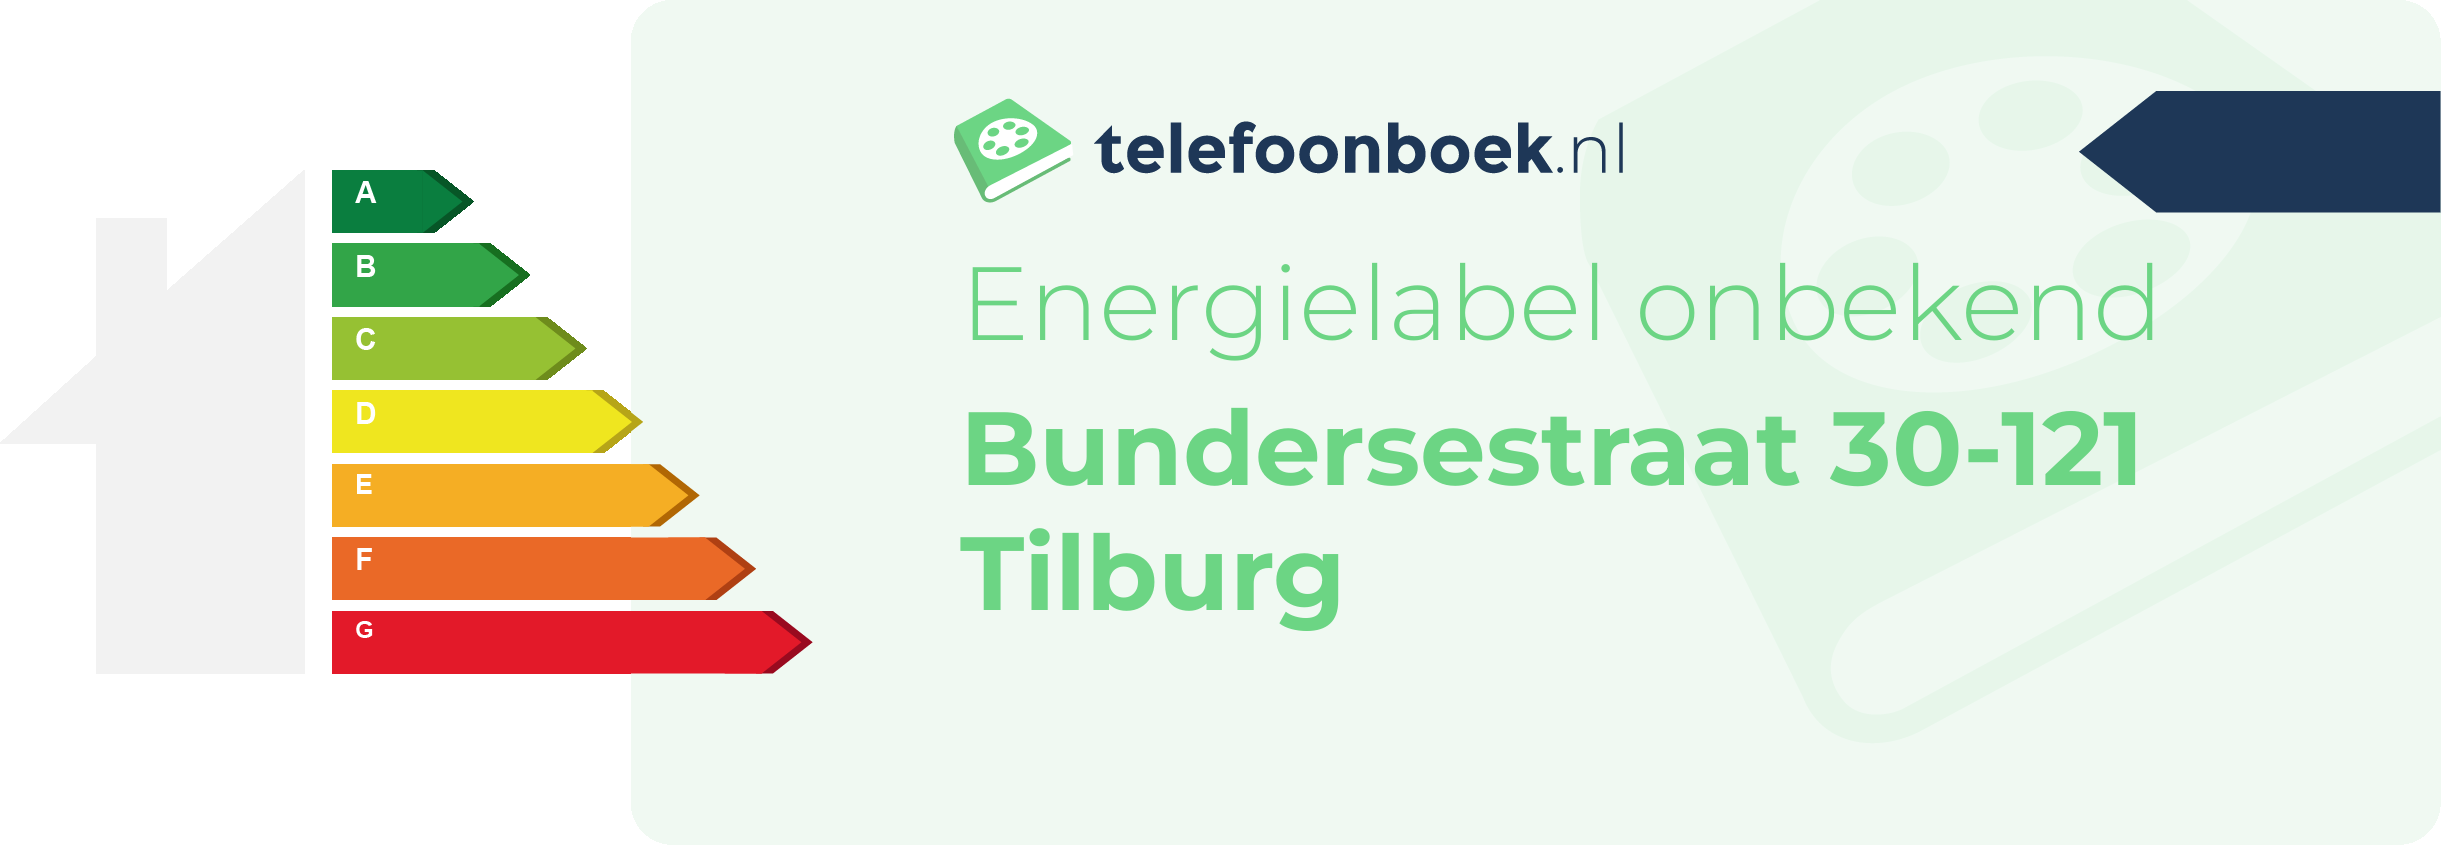 Energielabel Bundersestraat 30-121 Tilburg